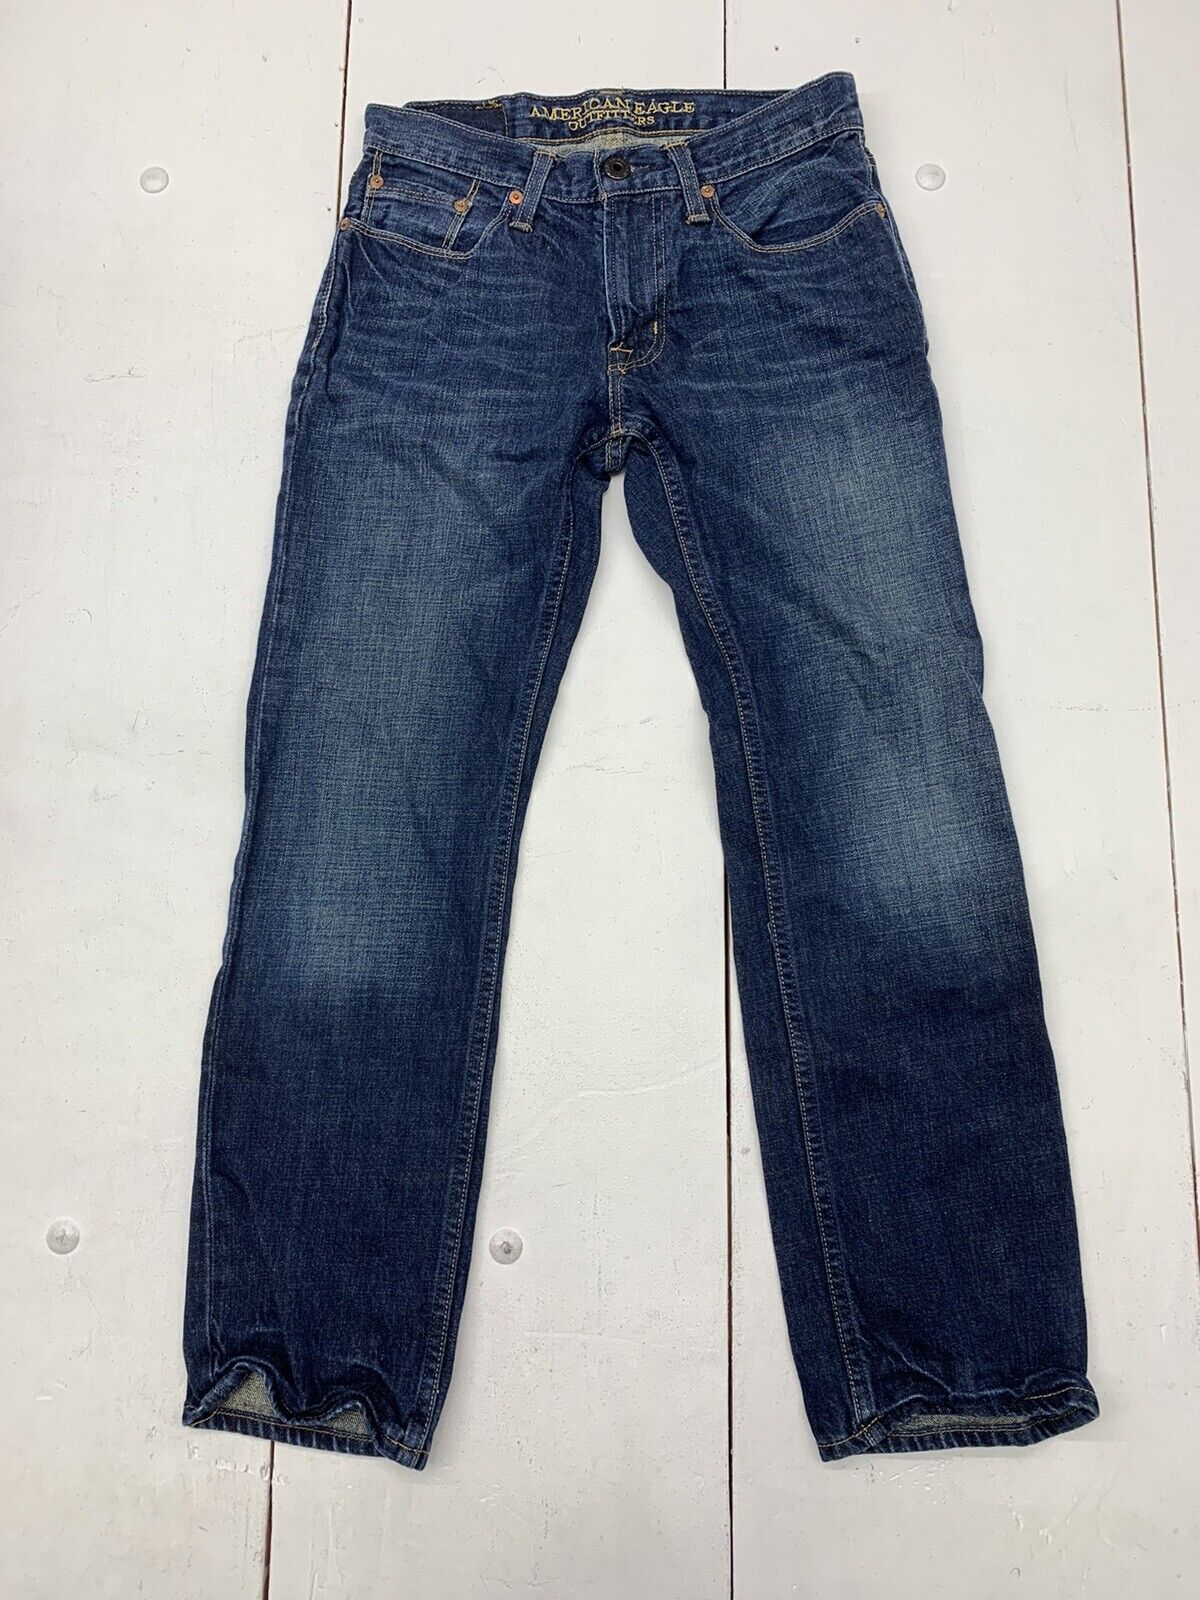 Eagle Slim Blue Jeans Mens size 28/30 exchange